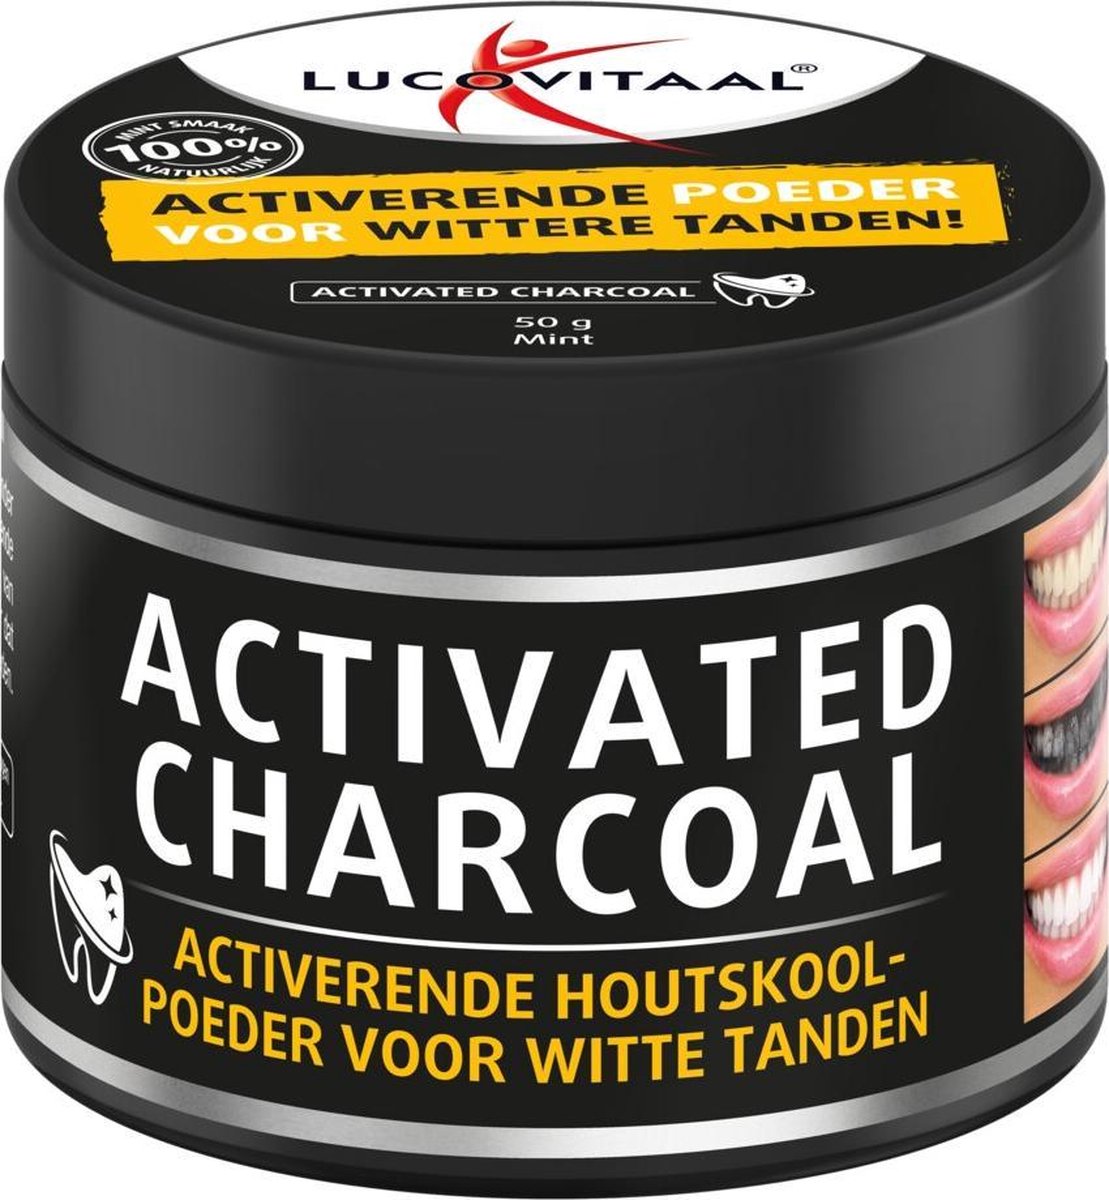 Lucovitaal - Activated Charcoal - Geactiveerde Houtskoolpoeder voor wittere tanden - 50 gram